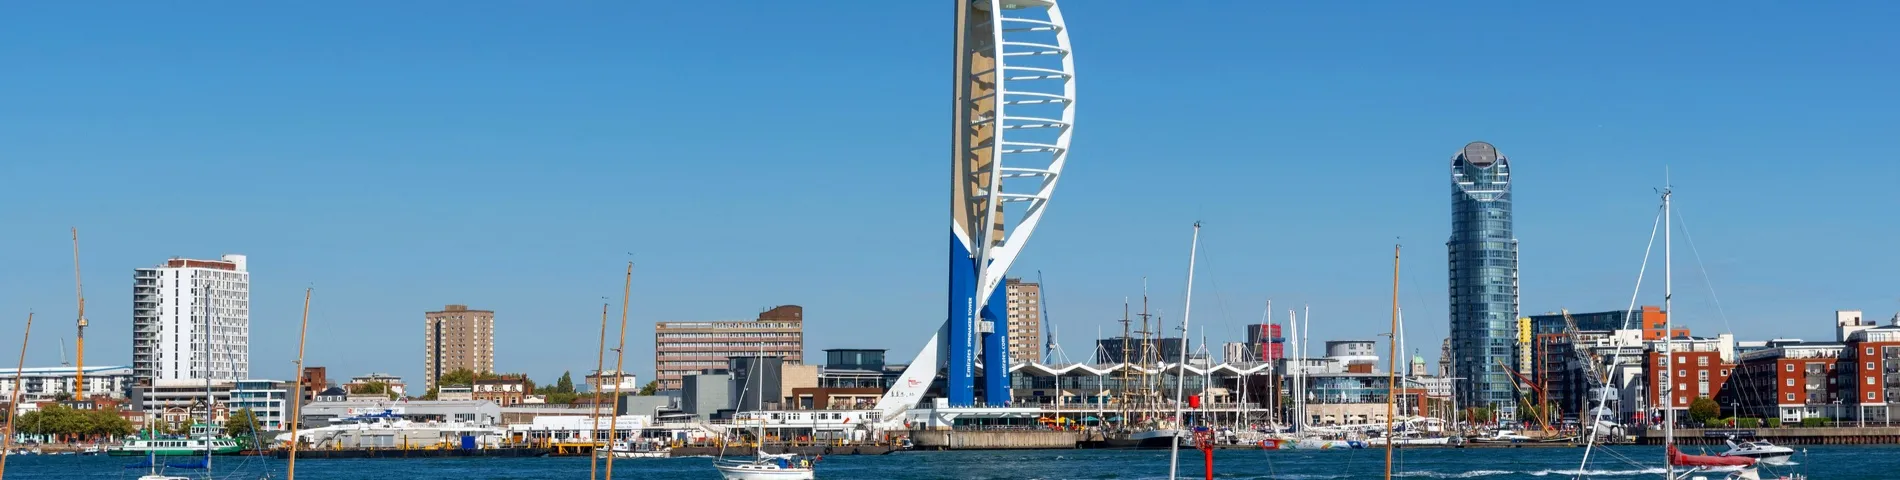 Portsmouth - Curs estàndard